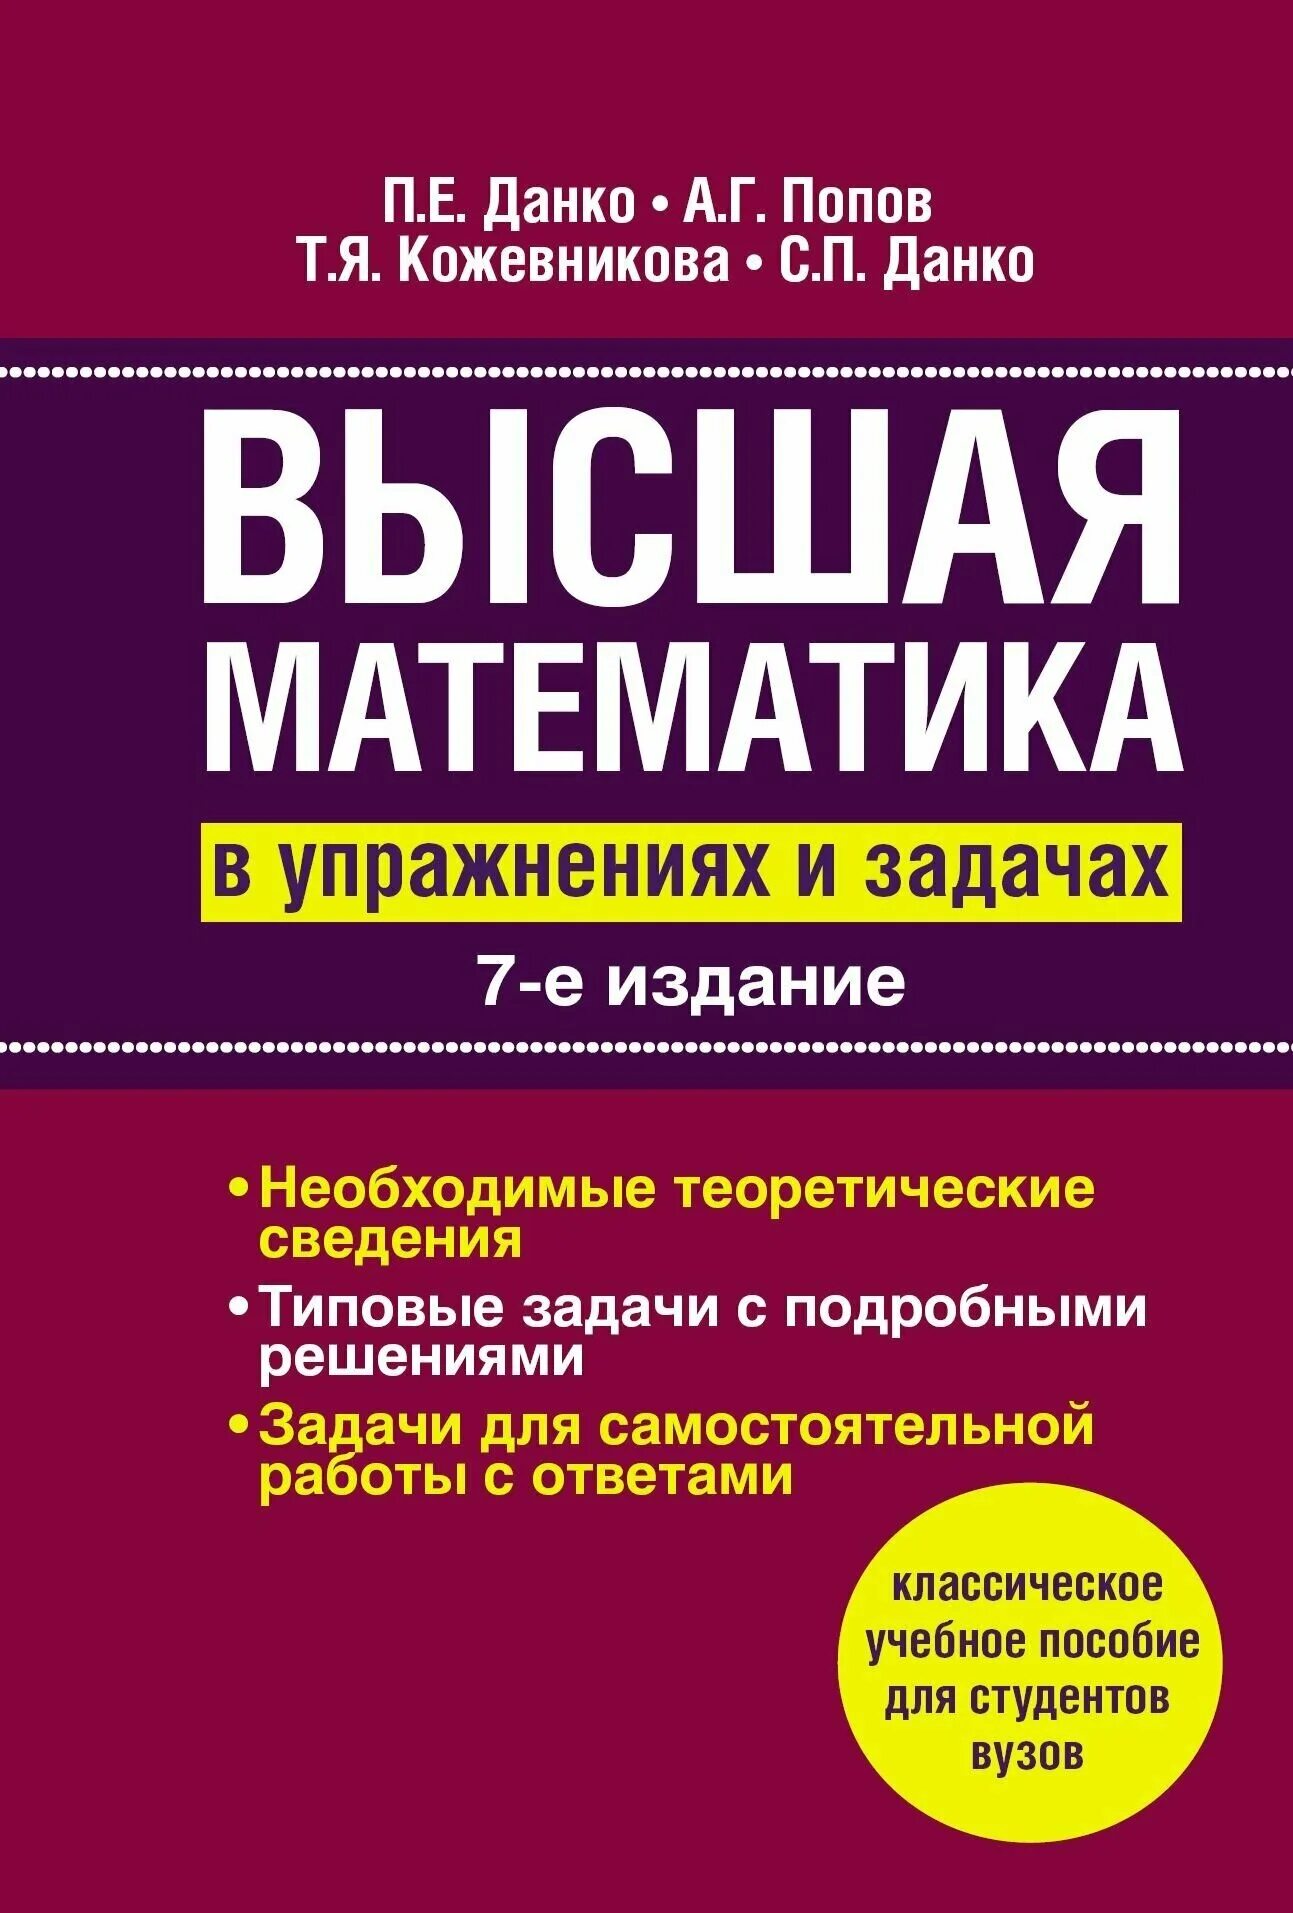 Высшая математика. Высшая математика Данко Попов Кожевникова. Высшая математика книга. Высшая математика в упражнениях и задачах данко